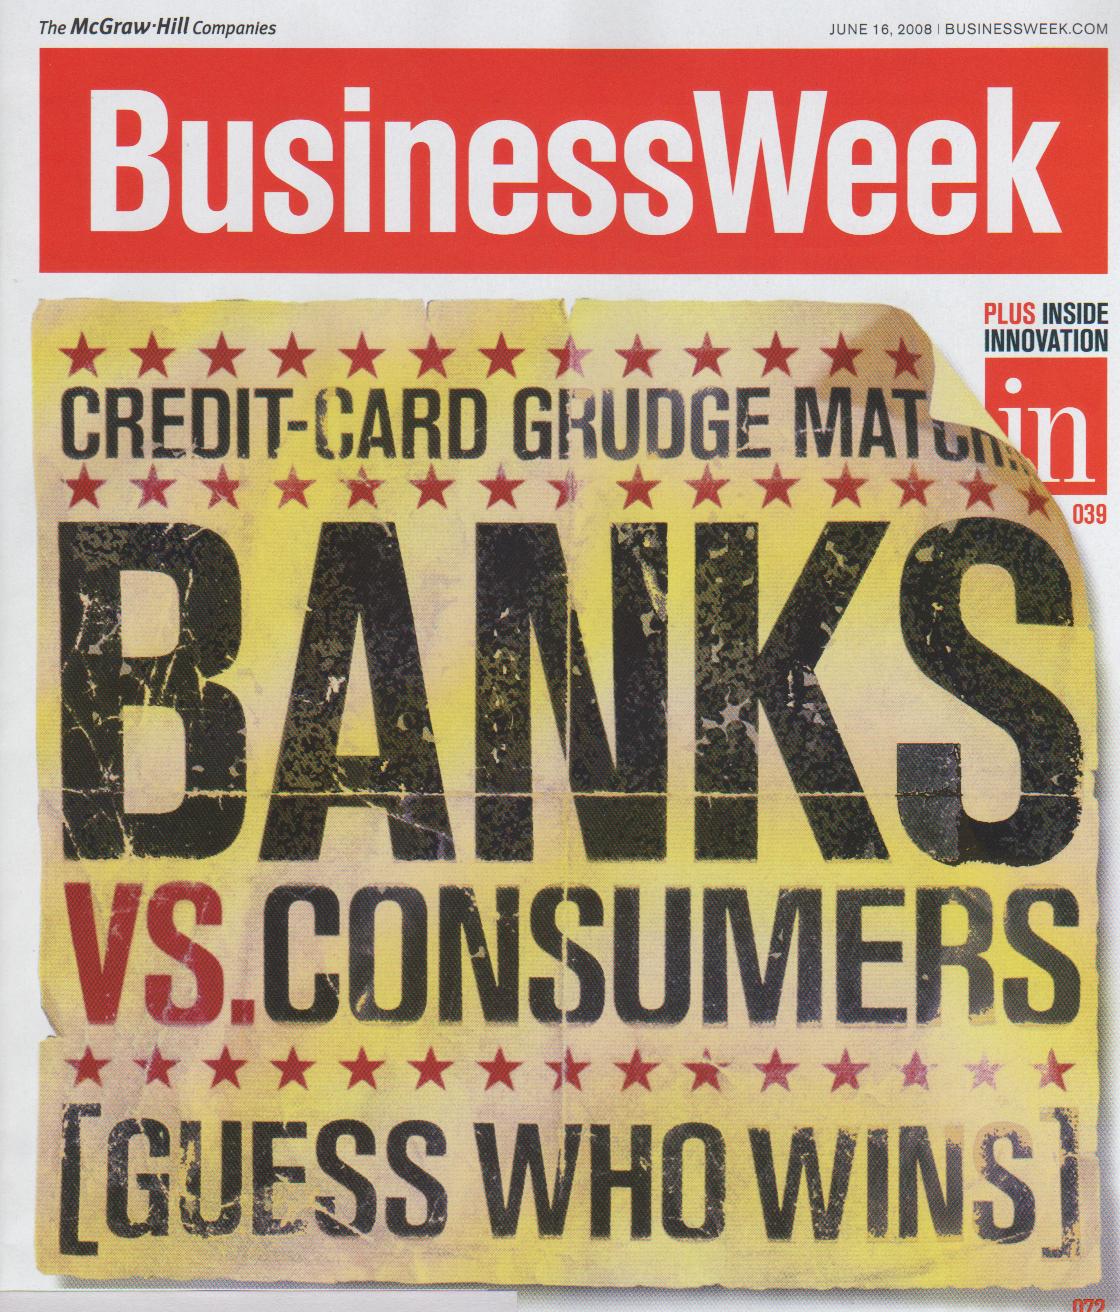 [blog+image+6-9-08+banks+vs+ustomers+BW.jpg]